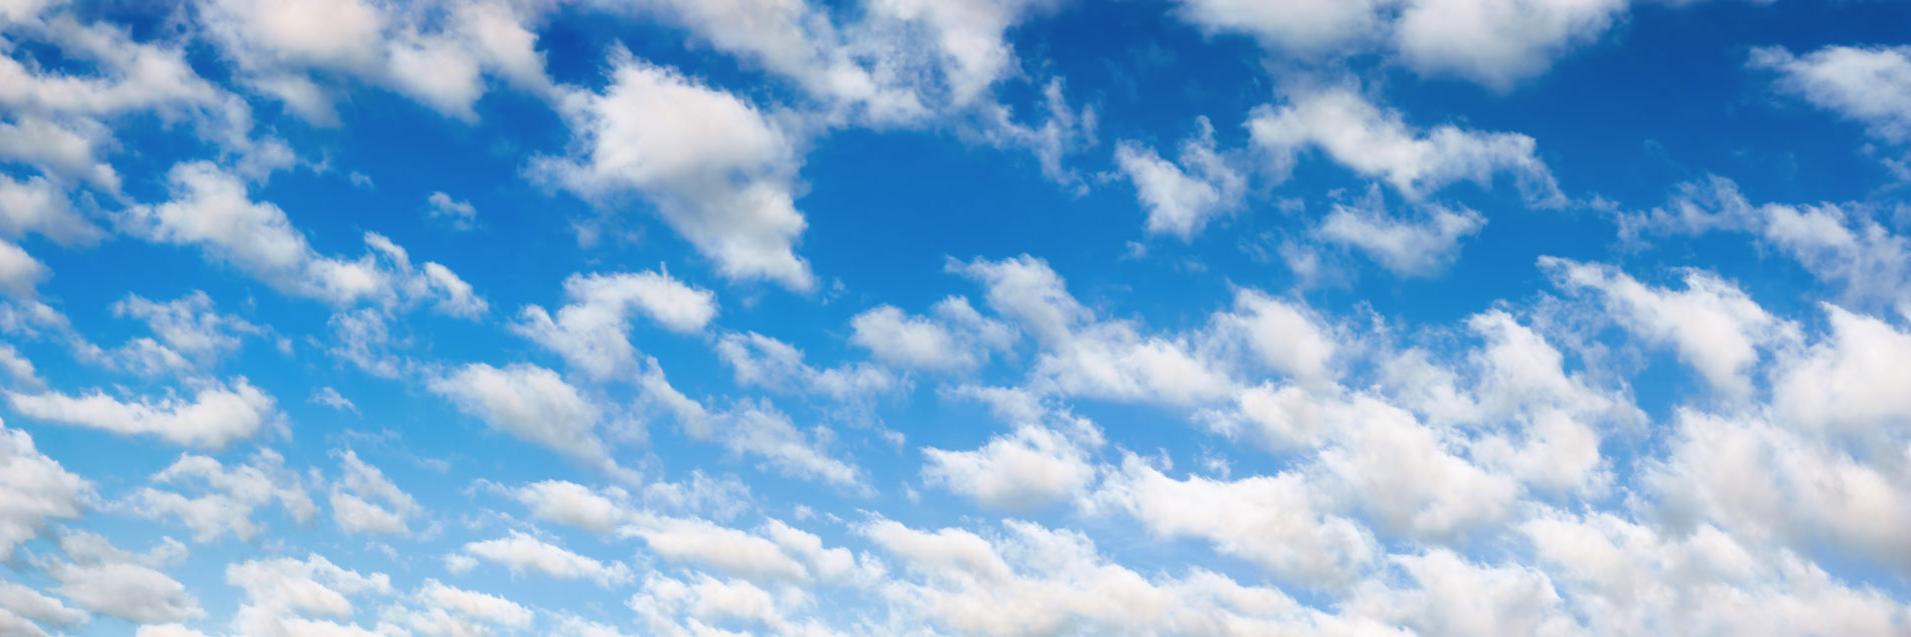 Fluffy hvite skyer på blå himmel-panorama